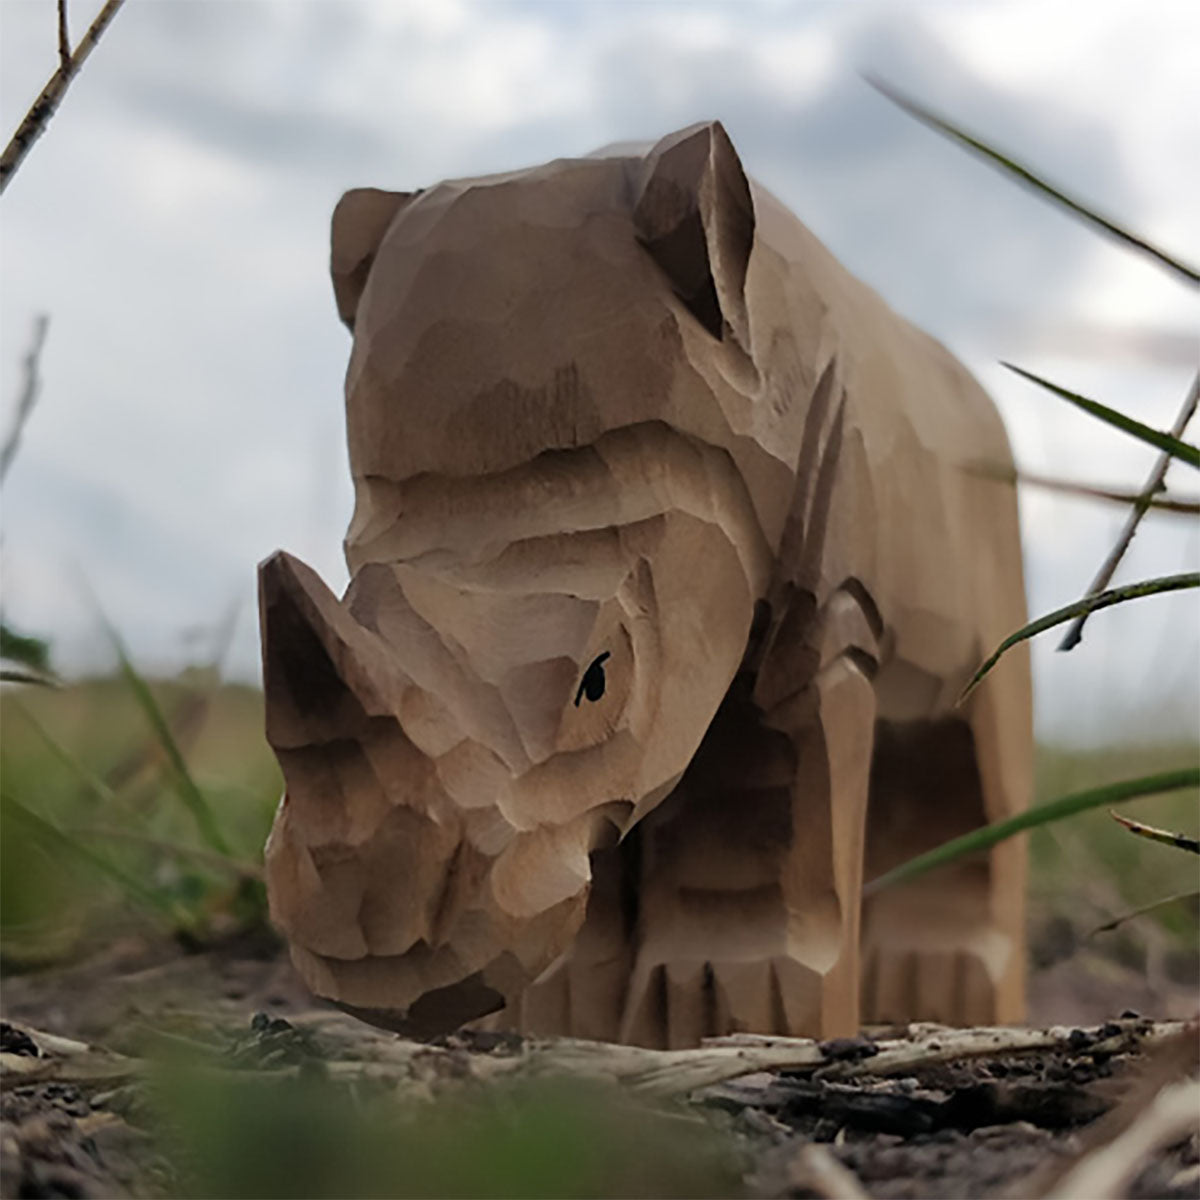 Wudimals Wooden Animal -  Rhino